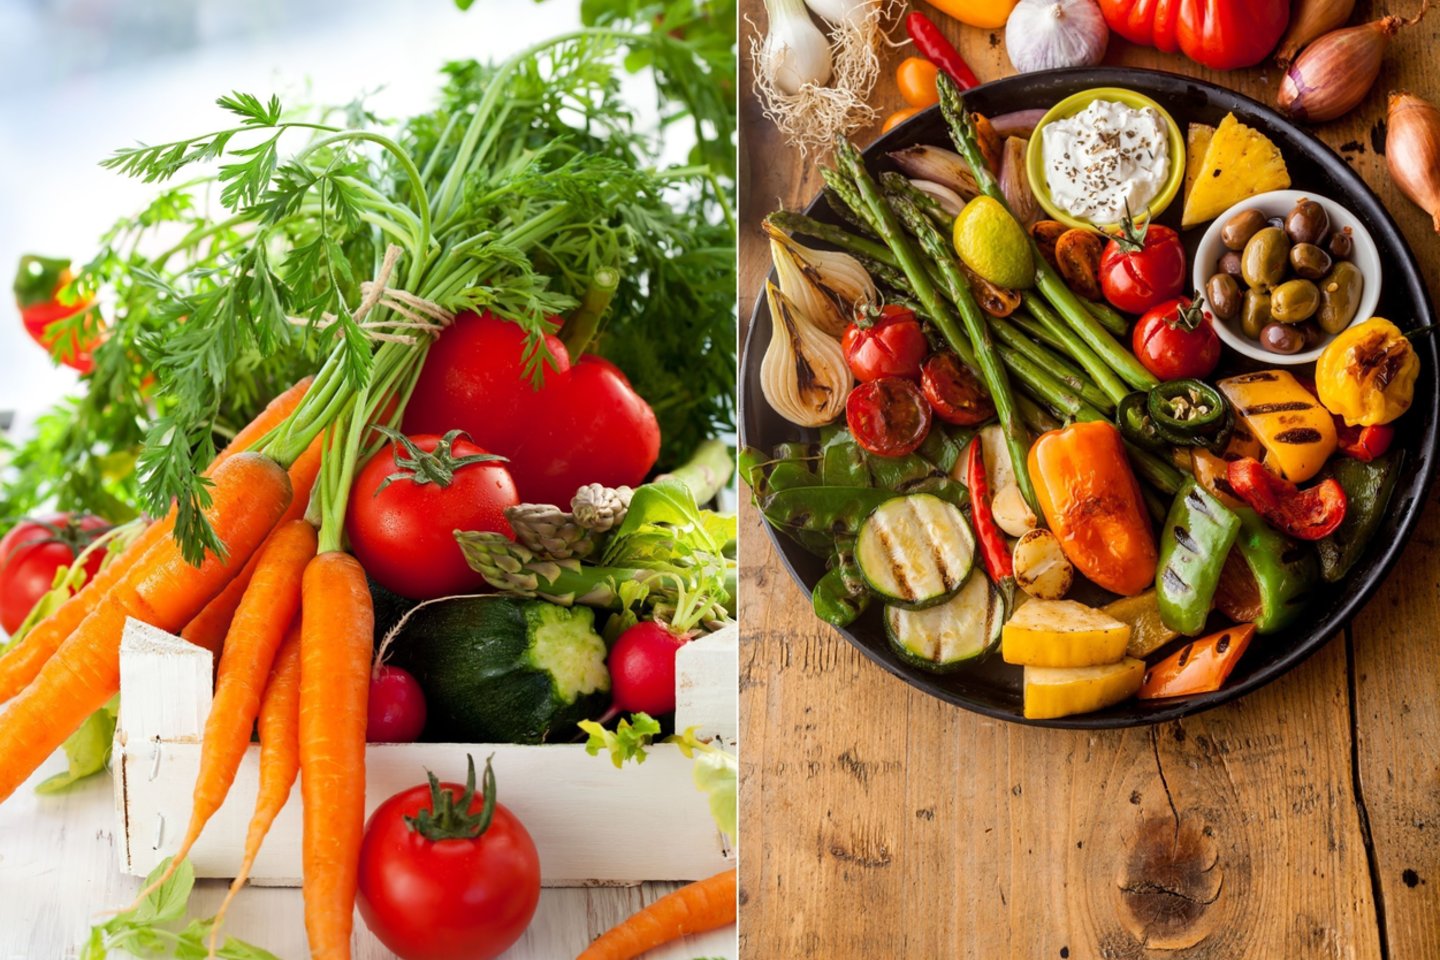 Patarė, kaip laikyti vaisius ar daržoves: ką dėti į šaldytuvą, o kam tinka kambario temperatūra